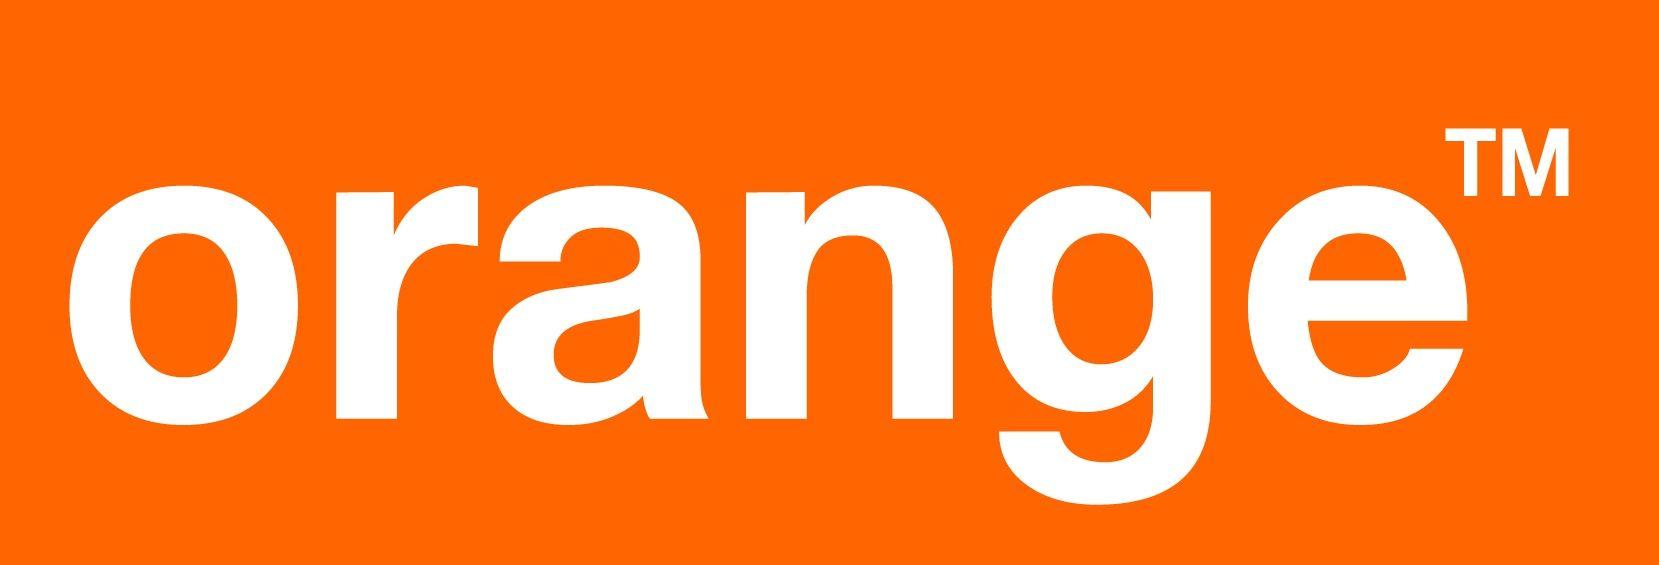 Orange Company Logo - 0844 880 4035 Orange Customer Service